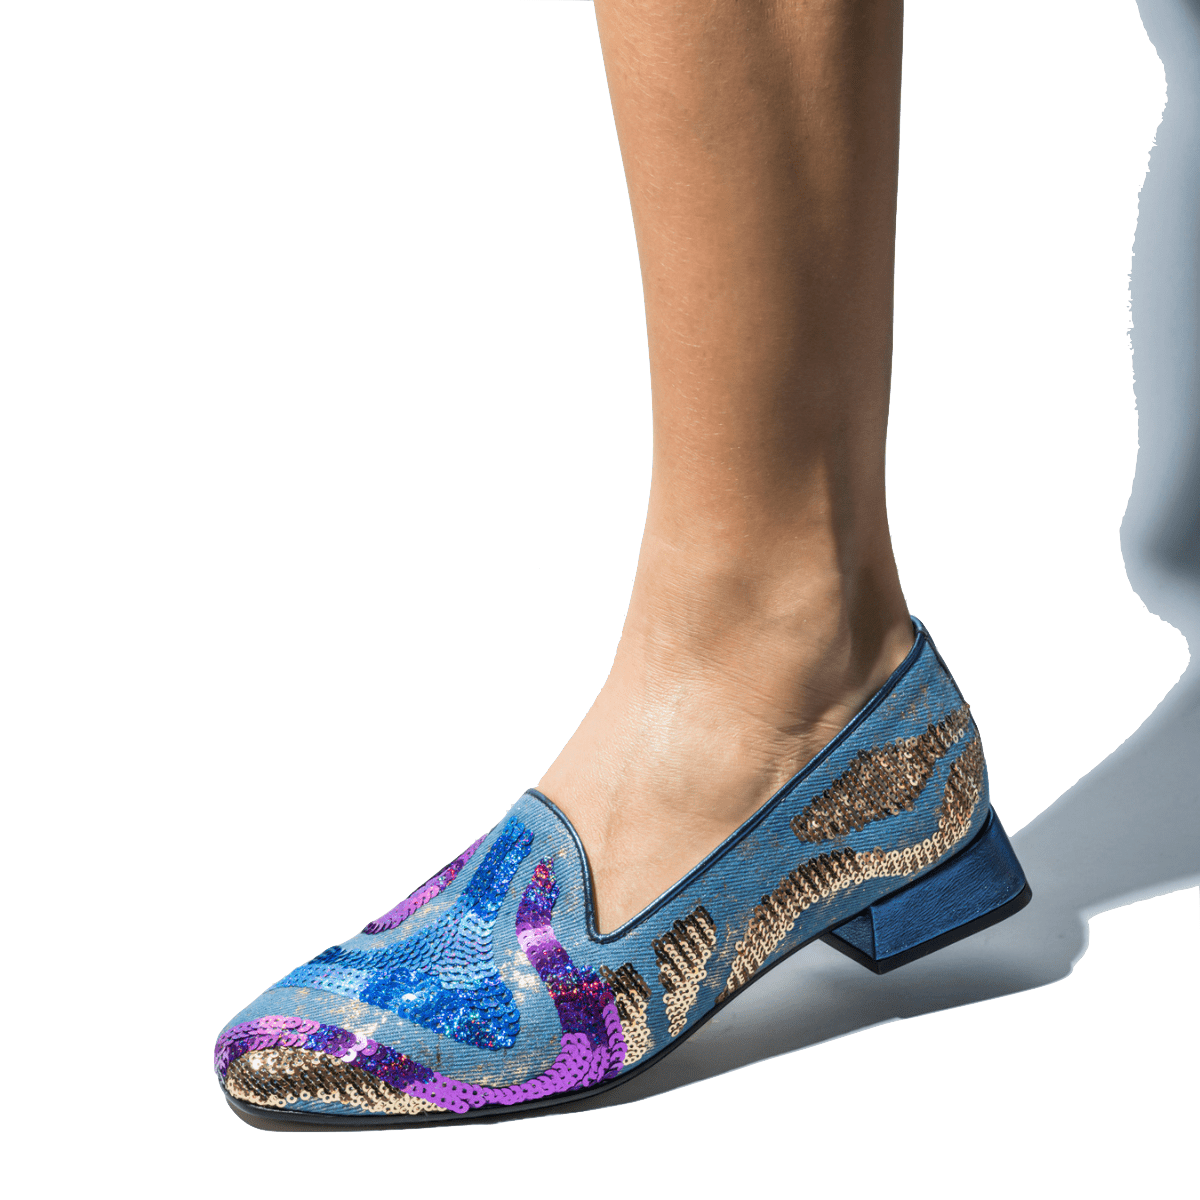 Pantofolina Le Gazzelle Paillettes Stella Cobalt - Le Gazzelle - Calzature Savorè